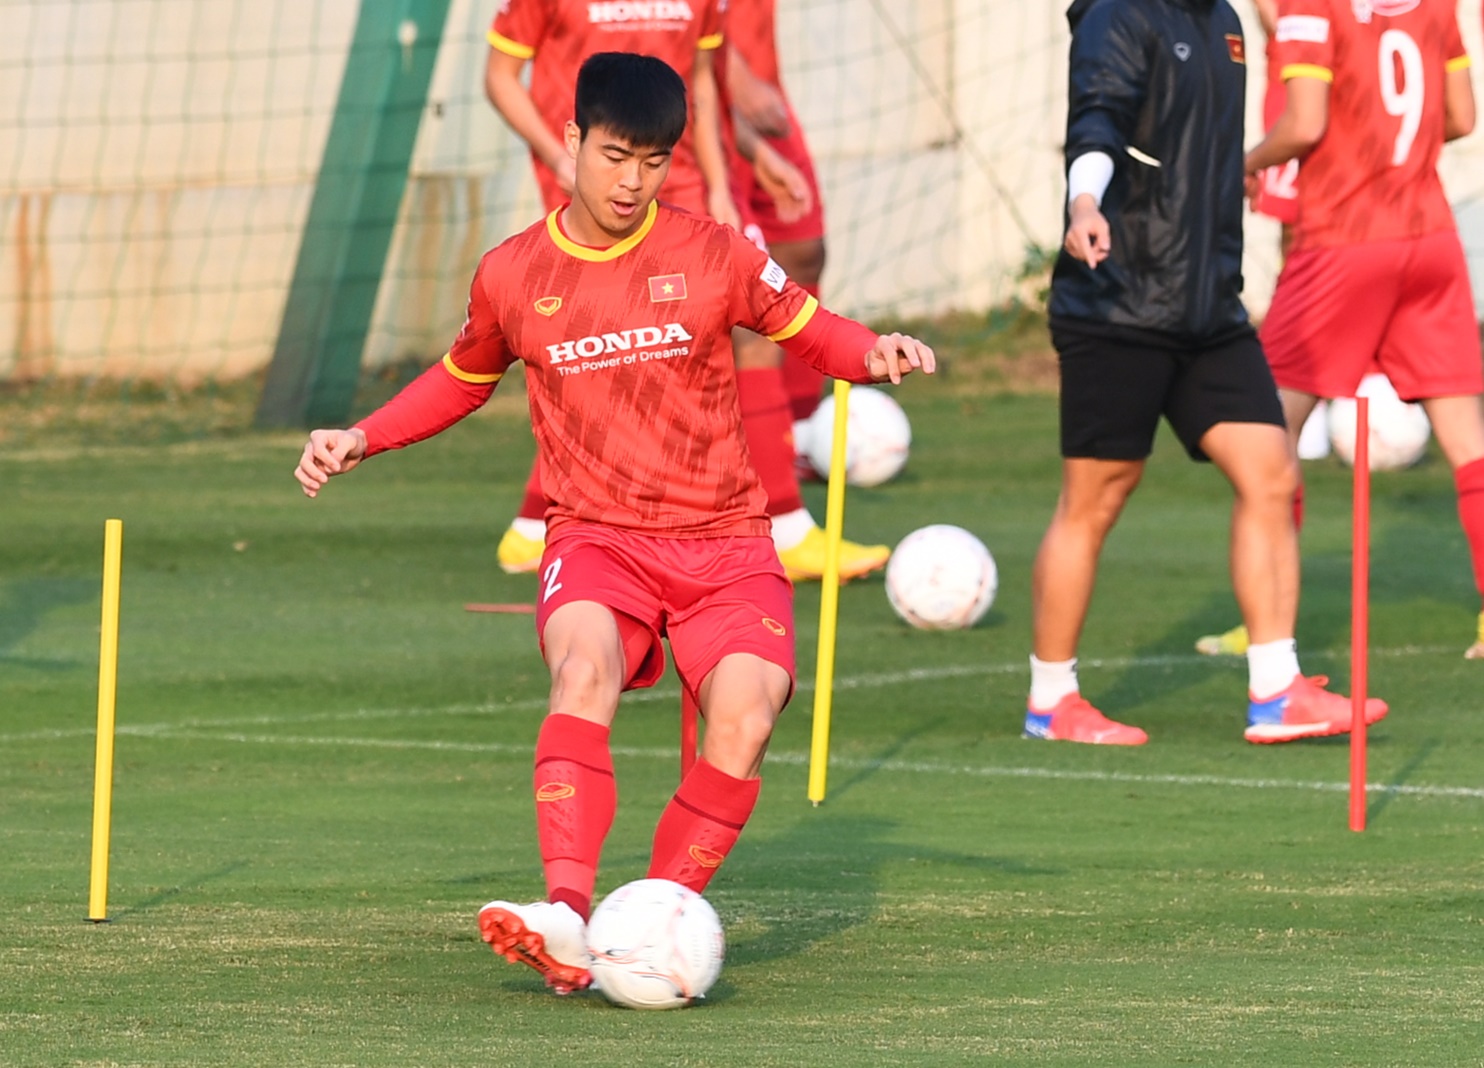 HLV Park Hang-seo cạn lời, cầu thủ ĐT Việt Nam bật cười với bài tập chóng mặt - Ảnh 2.